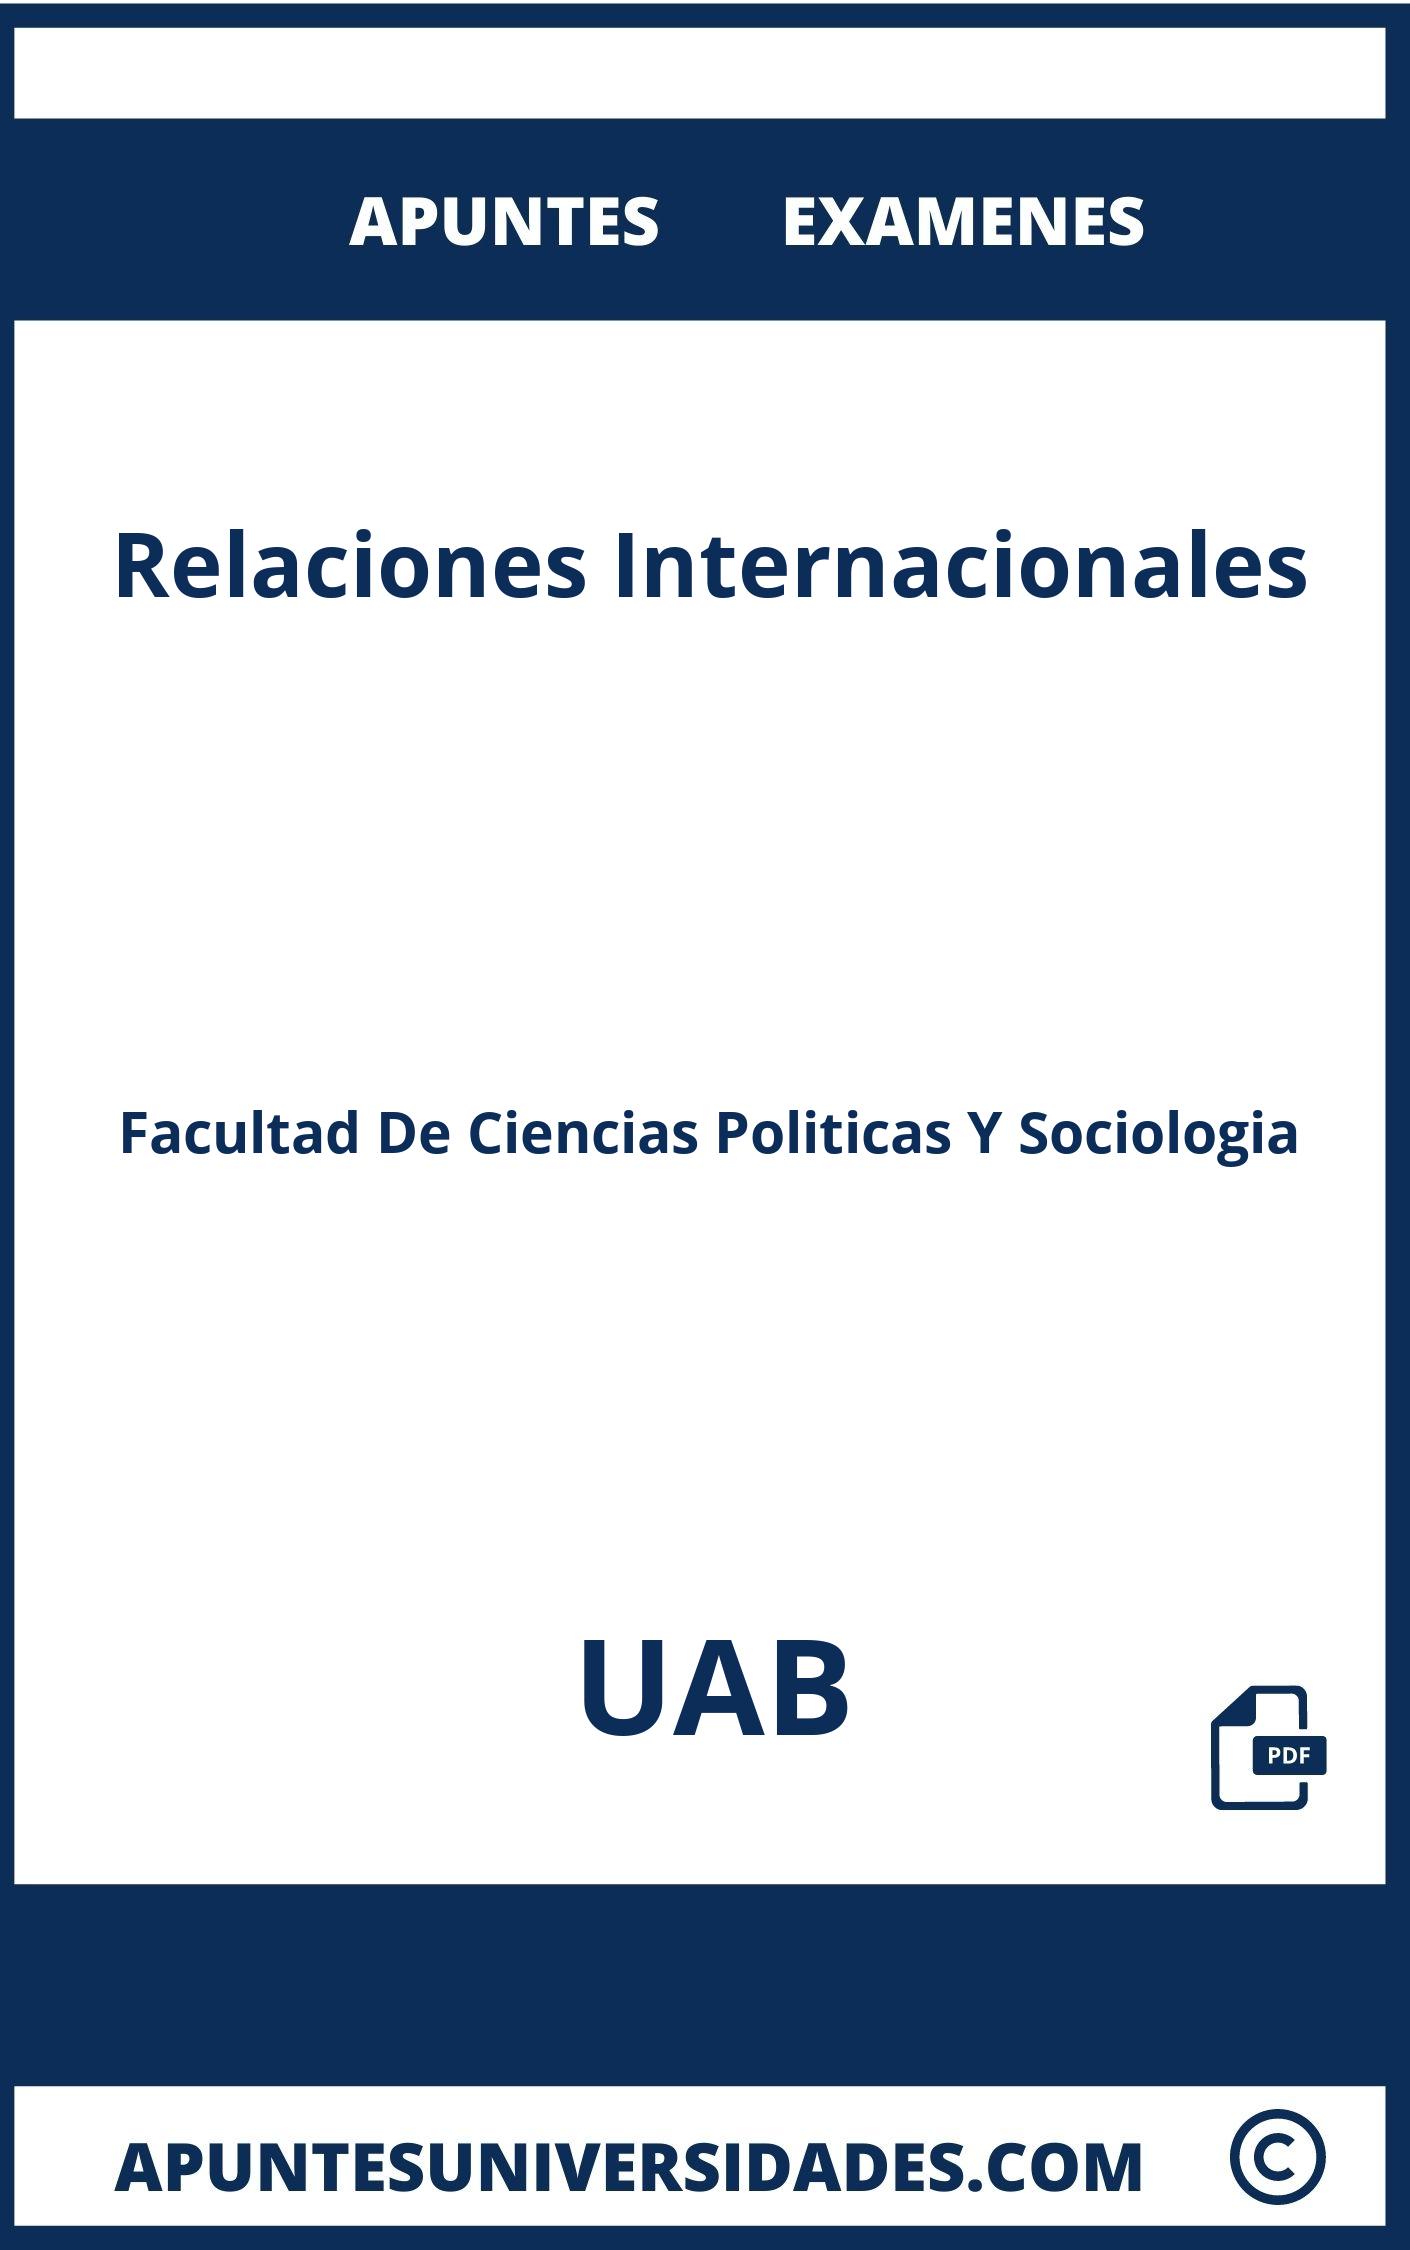 Apuntes y Examenes de Relaciones Internacionales UAB